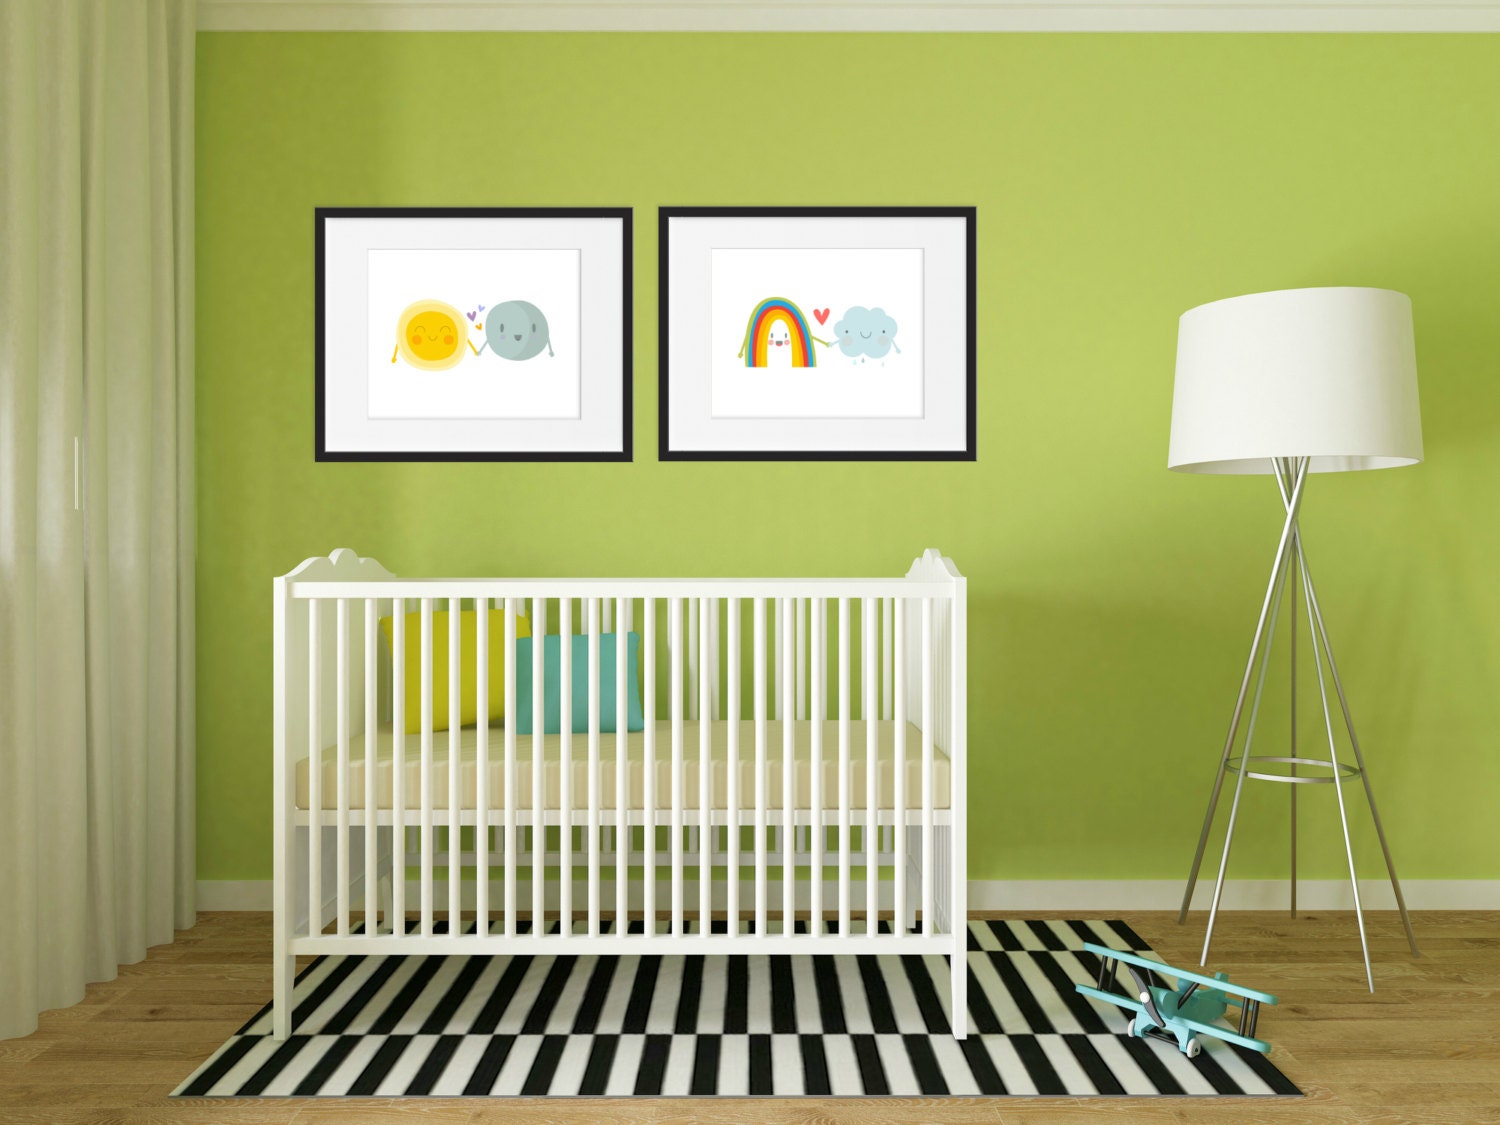 Rainbow Room Decor - Nursery Art Happy Weather Print Kid Bedroom Kids & Cloud Sun Moon Set Of 2